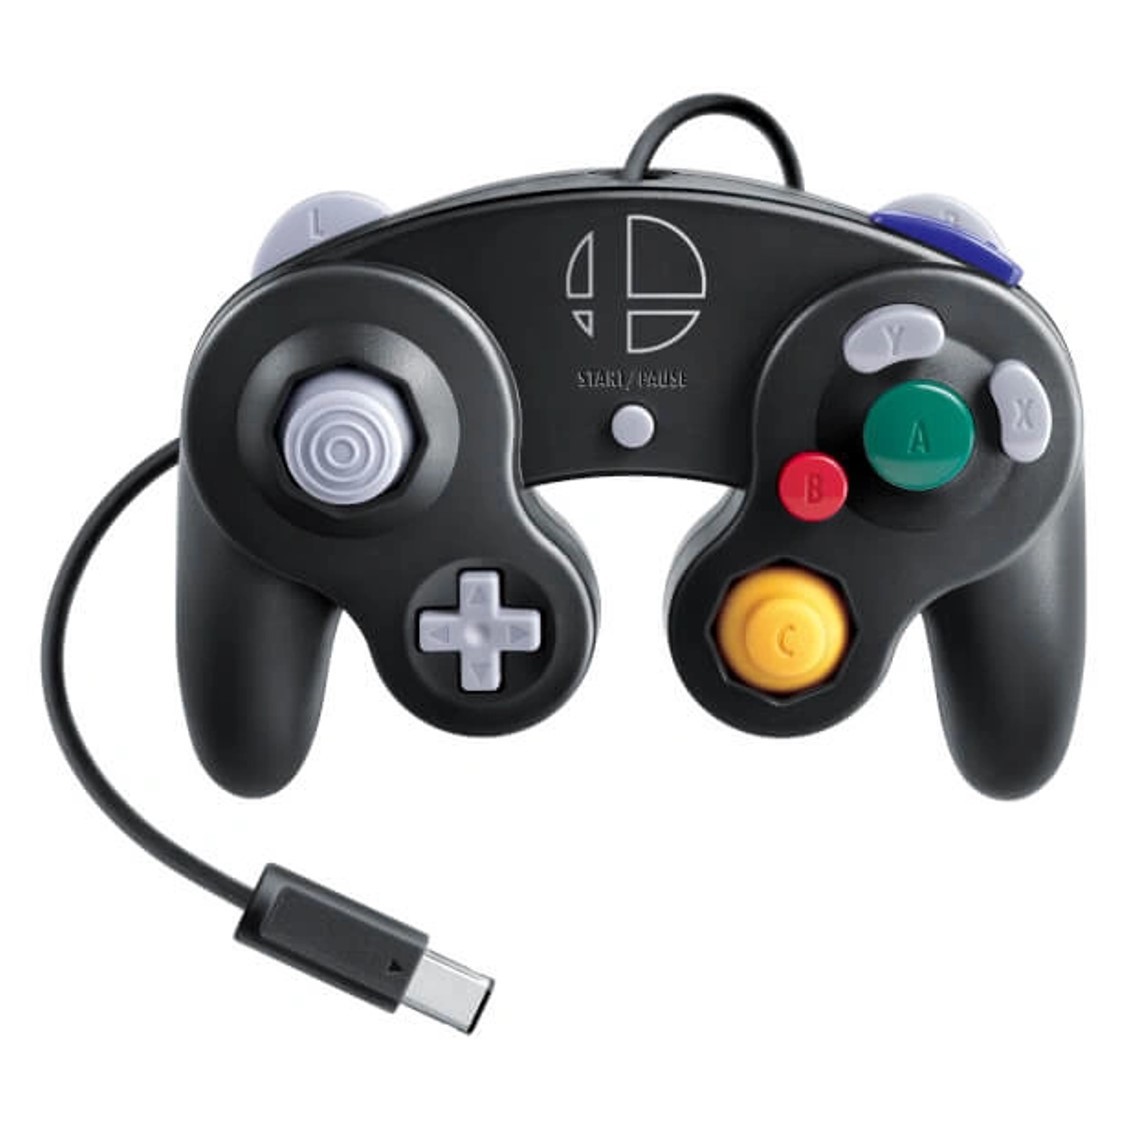 Originele GameCube Controller - Super Smash Bros. Edition - Gamecube Hardware